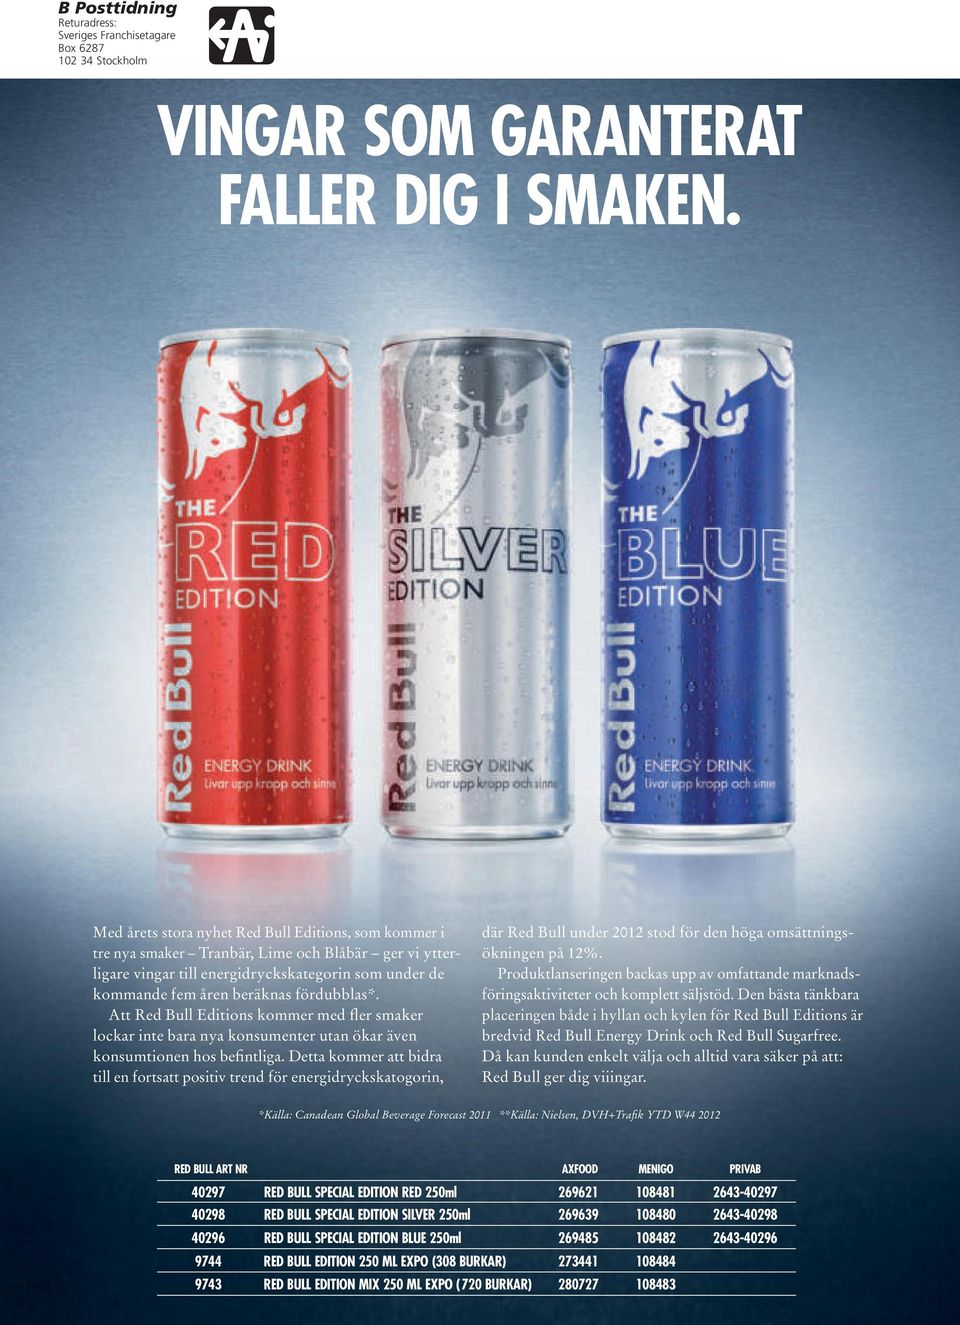 Att Red Bull Editions kommer med fler smaker lockar inte bara nya konsumenter utan ökar även konsumtionen hos befintliga.